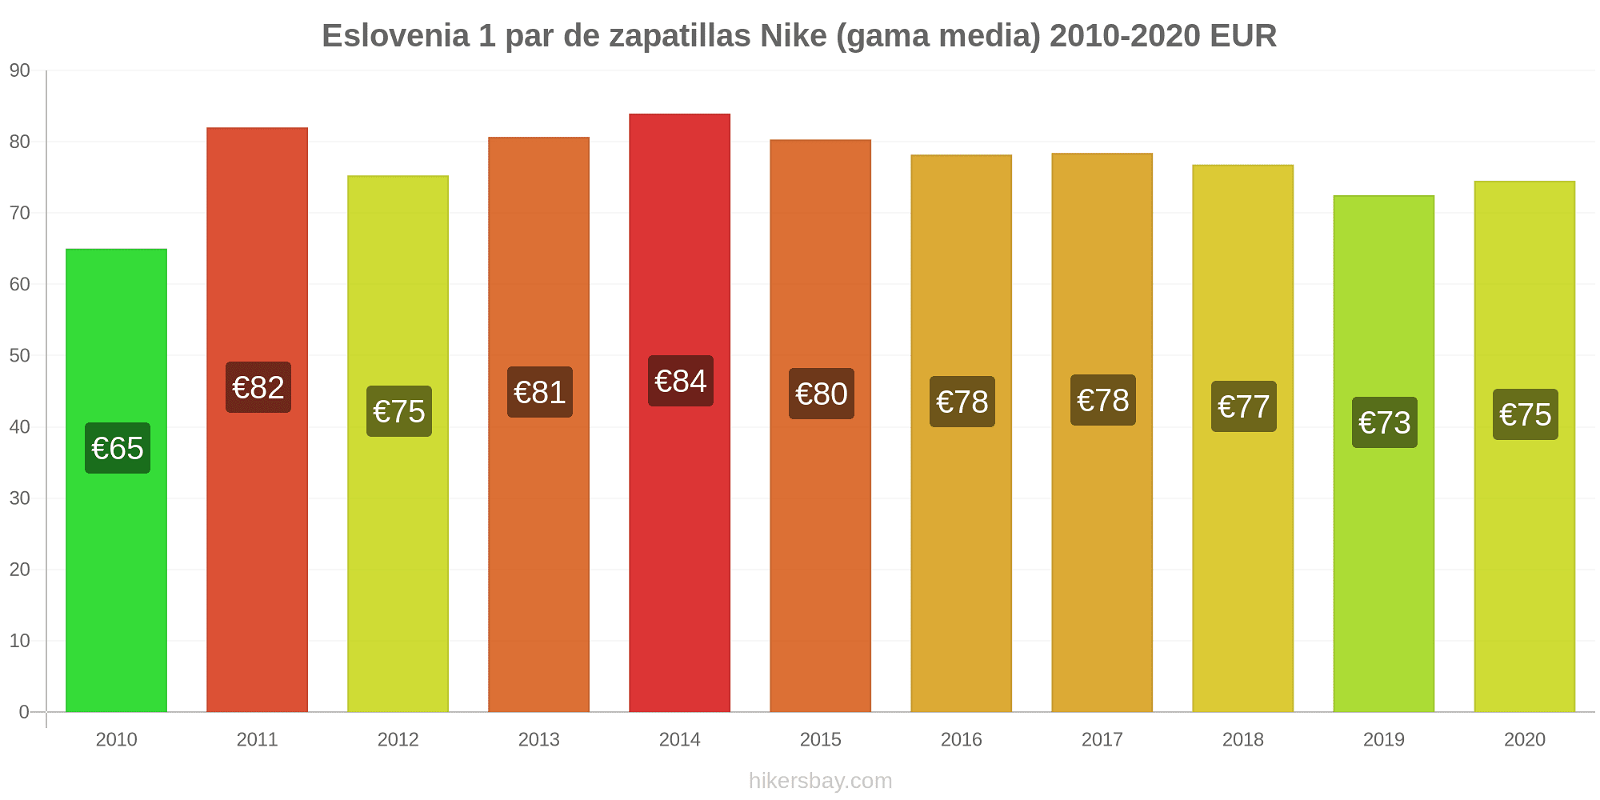 Eslovenia cambios de precios 1 par de zapatillas Nike (gama media) hikersbay.com